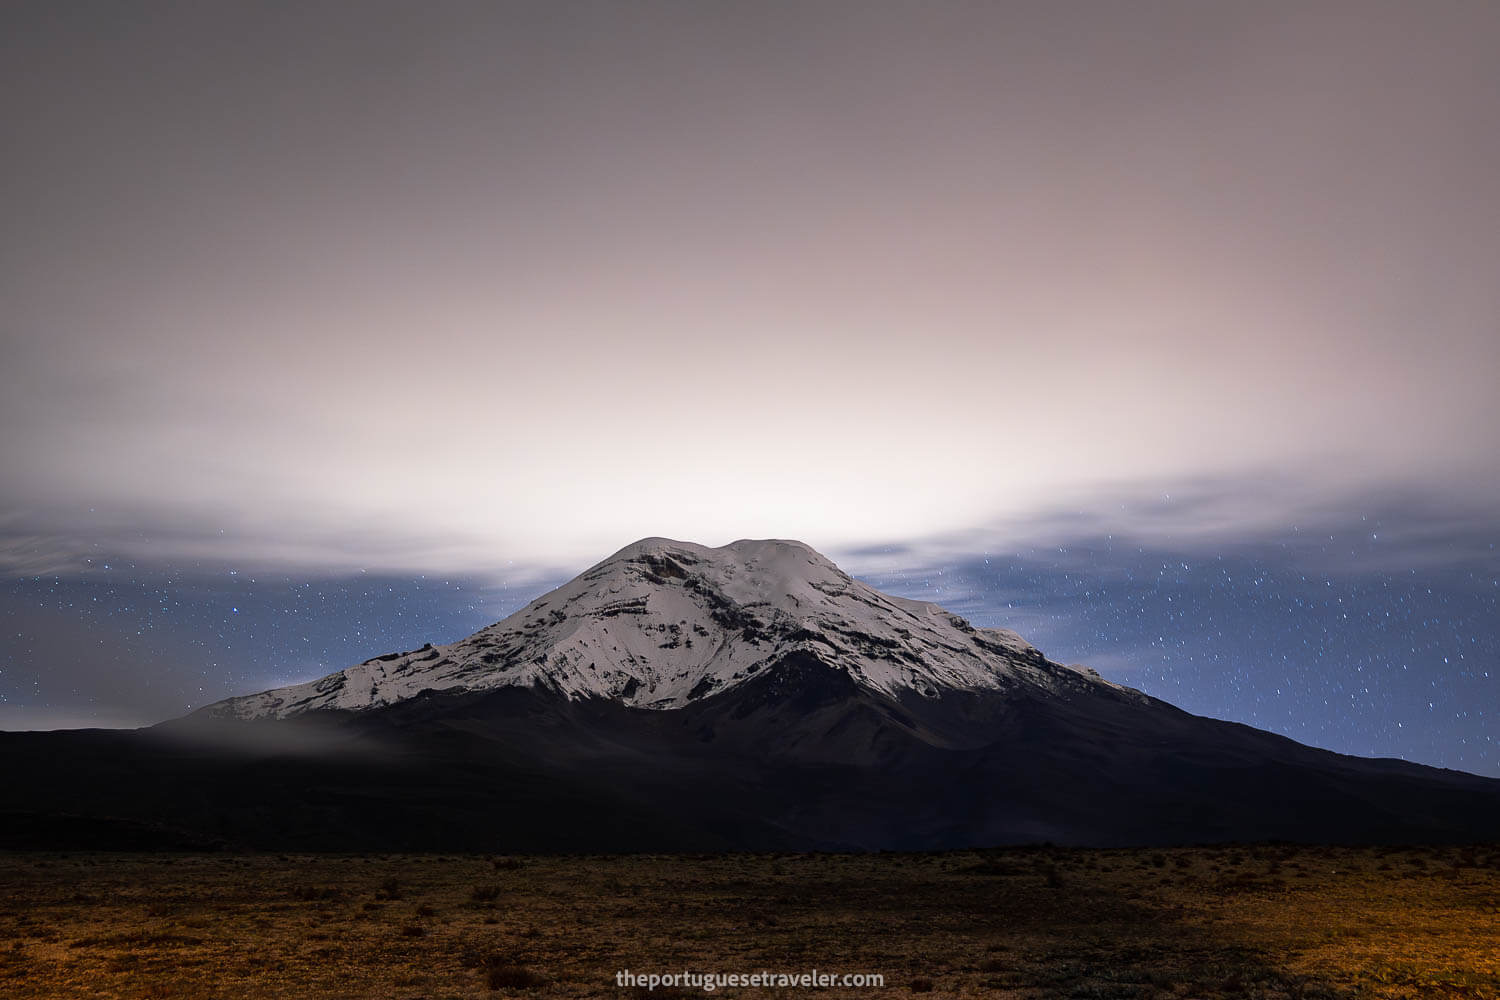 Chimborazo Volcano at night